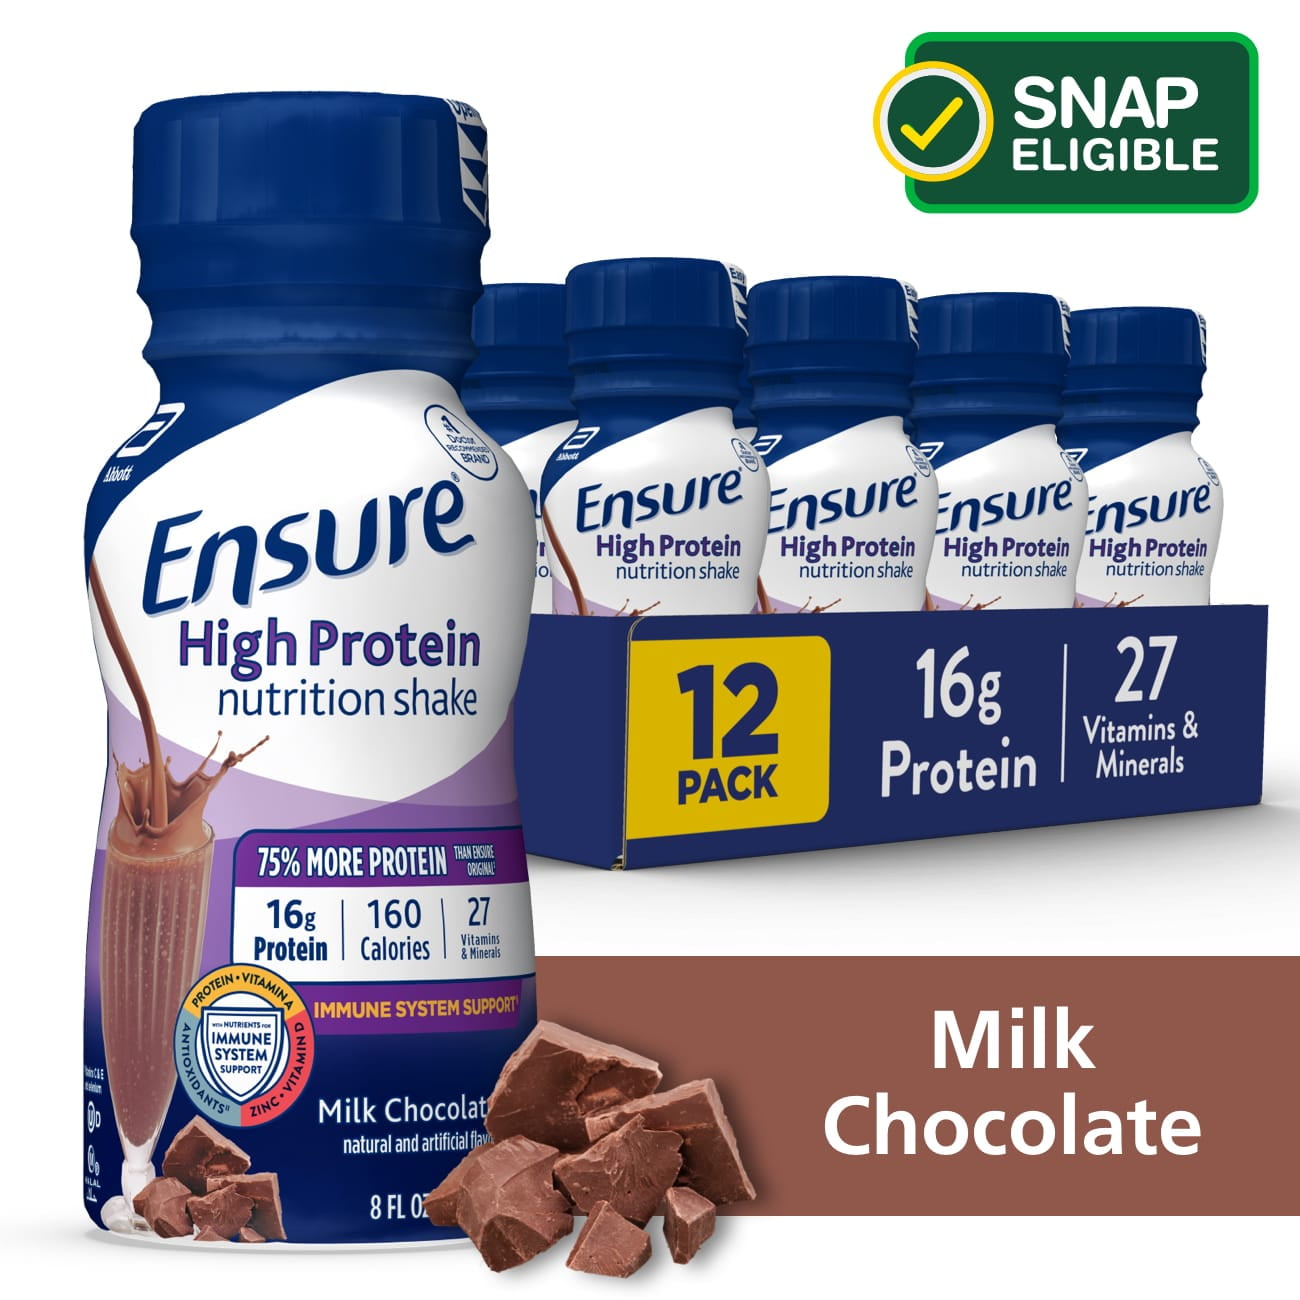 Krijt Demon redden Ensure High Protein Nutritional Shake, Milk Chocolate, 8 fl oz, 12 Ct -  Walmart.com